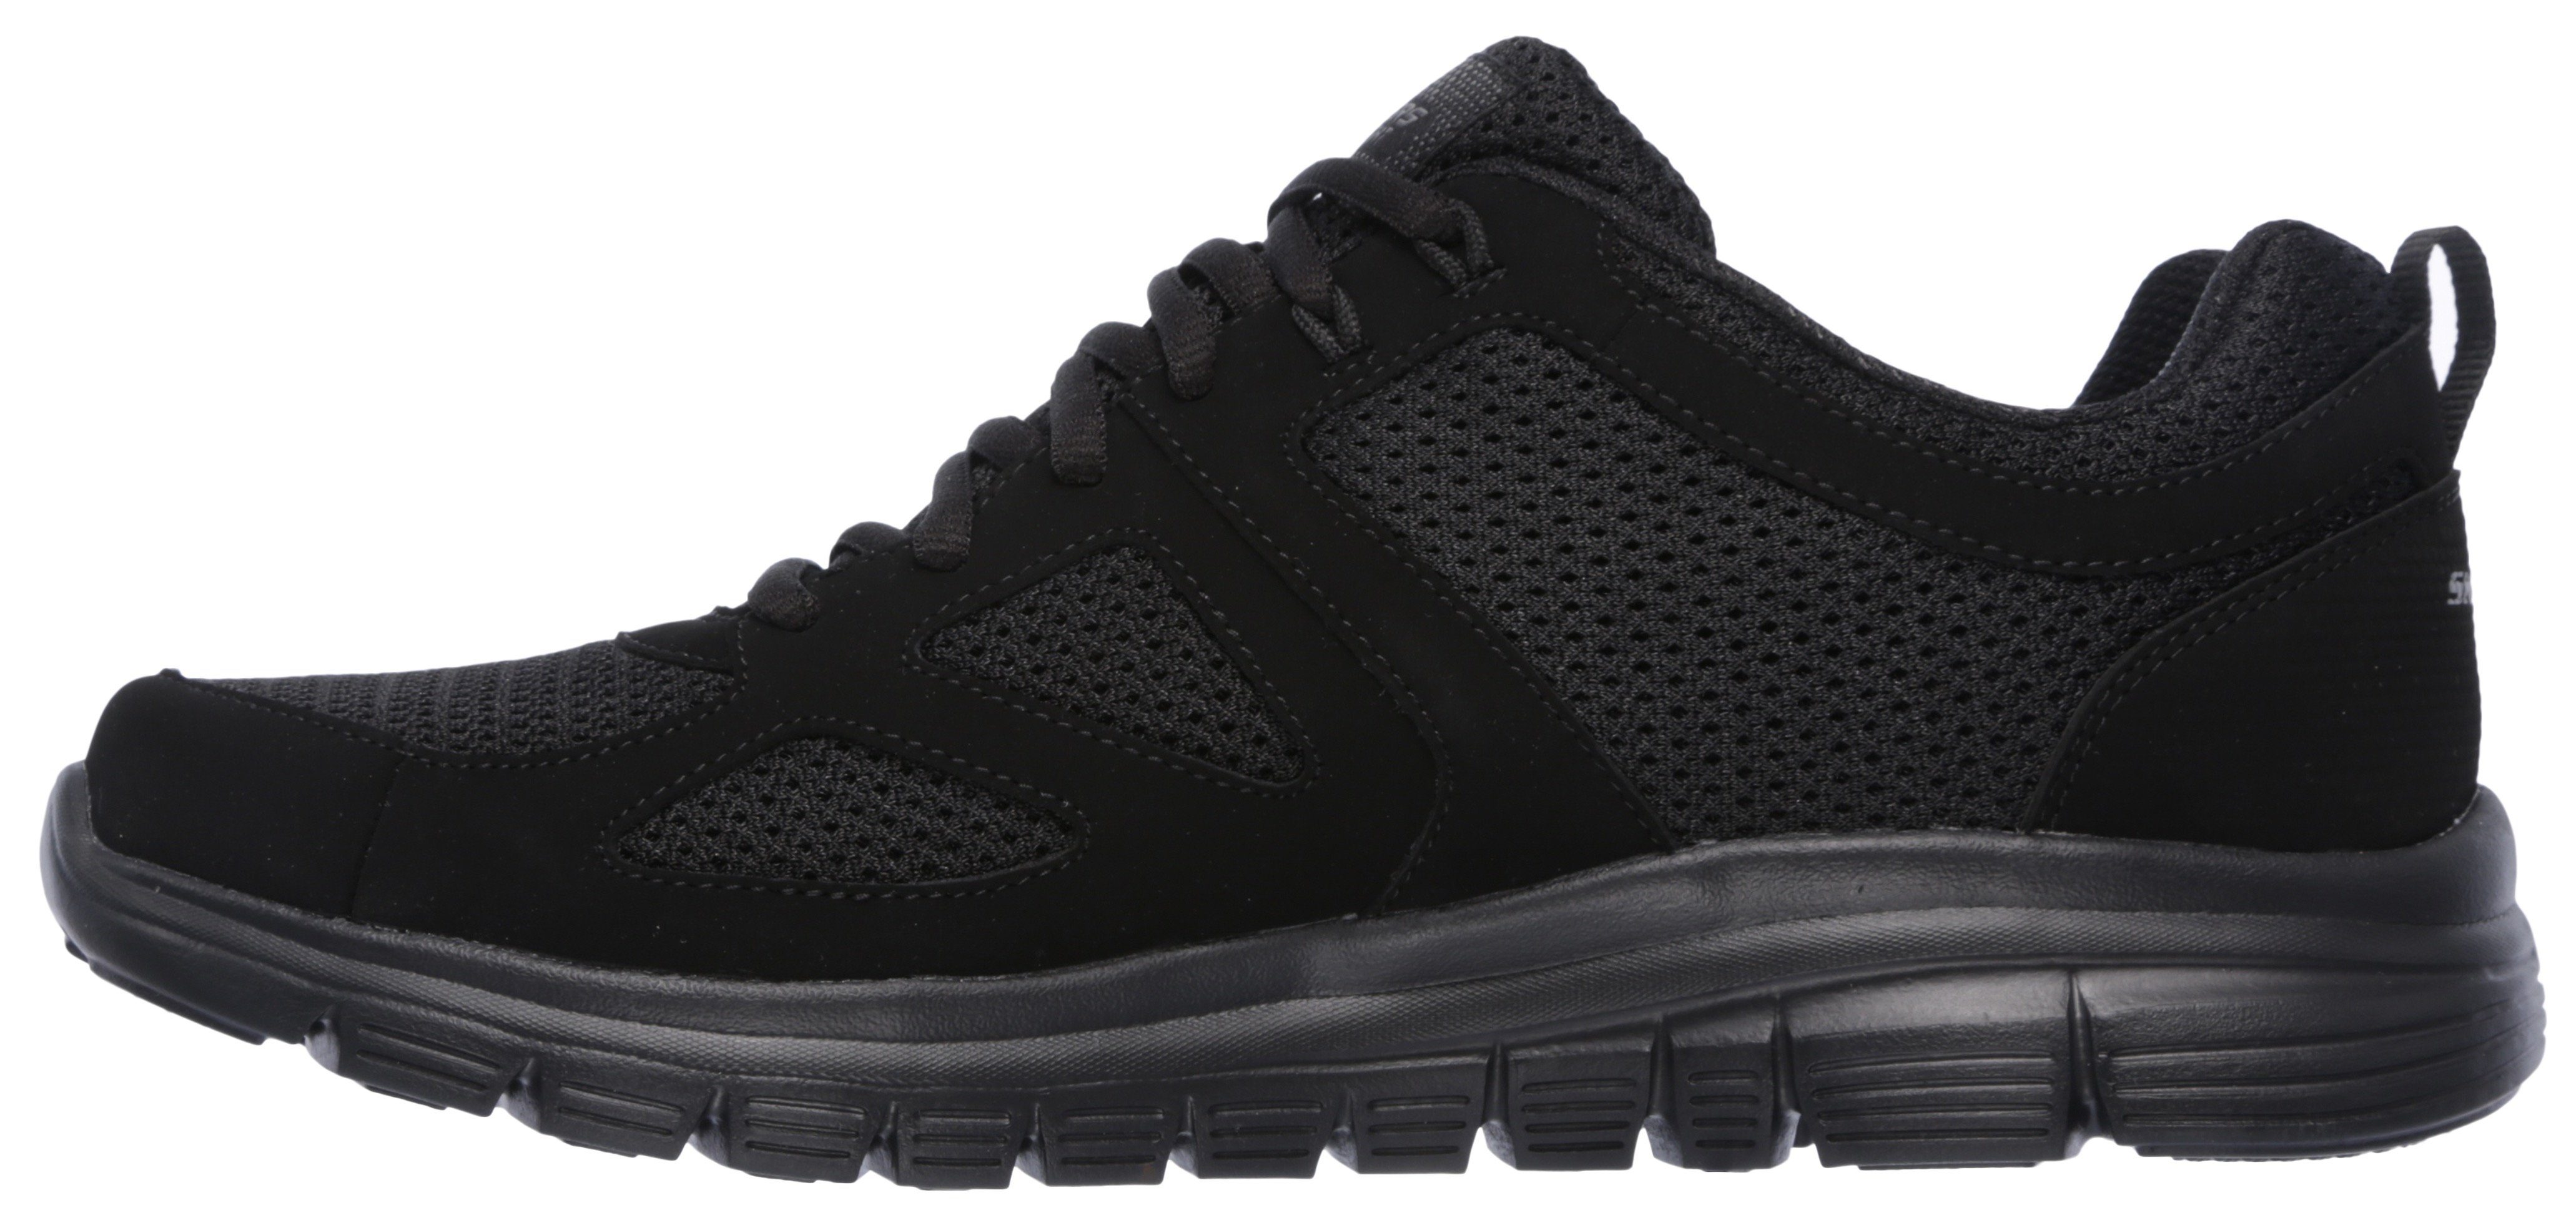 Skechers BURNS-AGOURA Sneaker im monochromen Look black/black